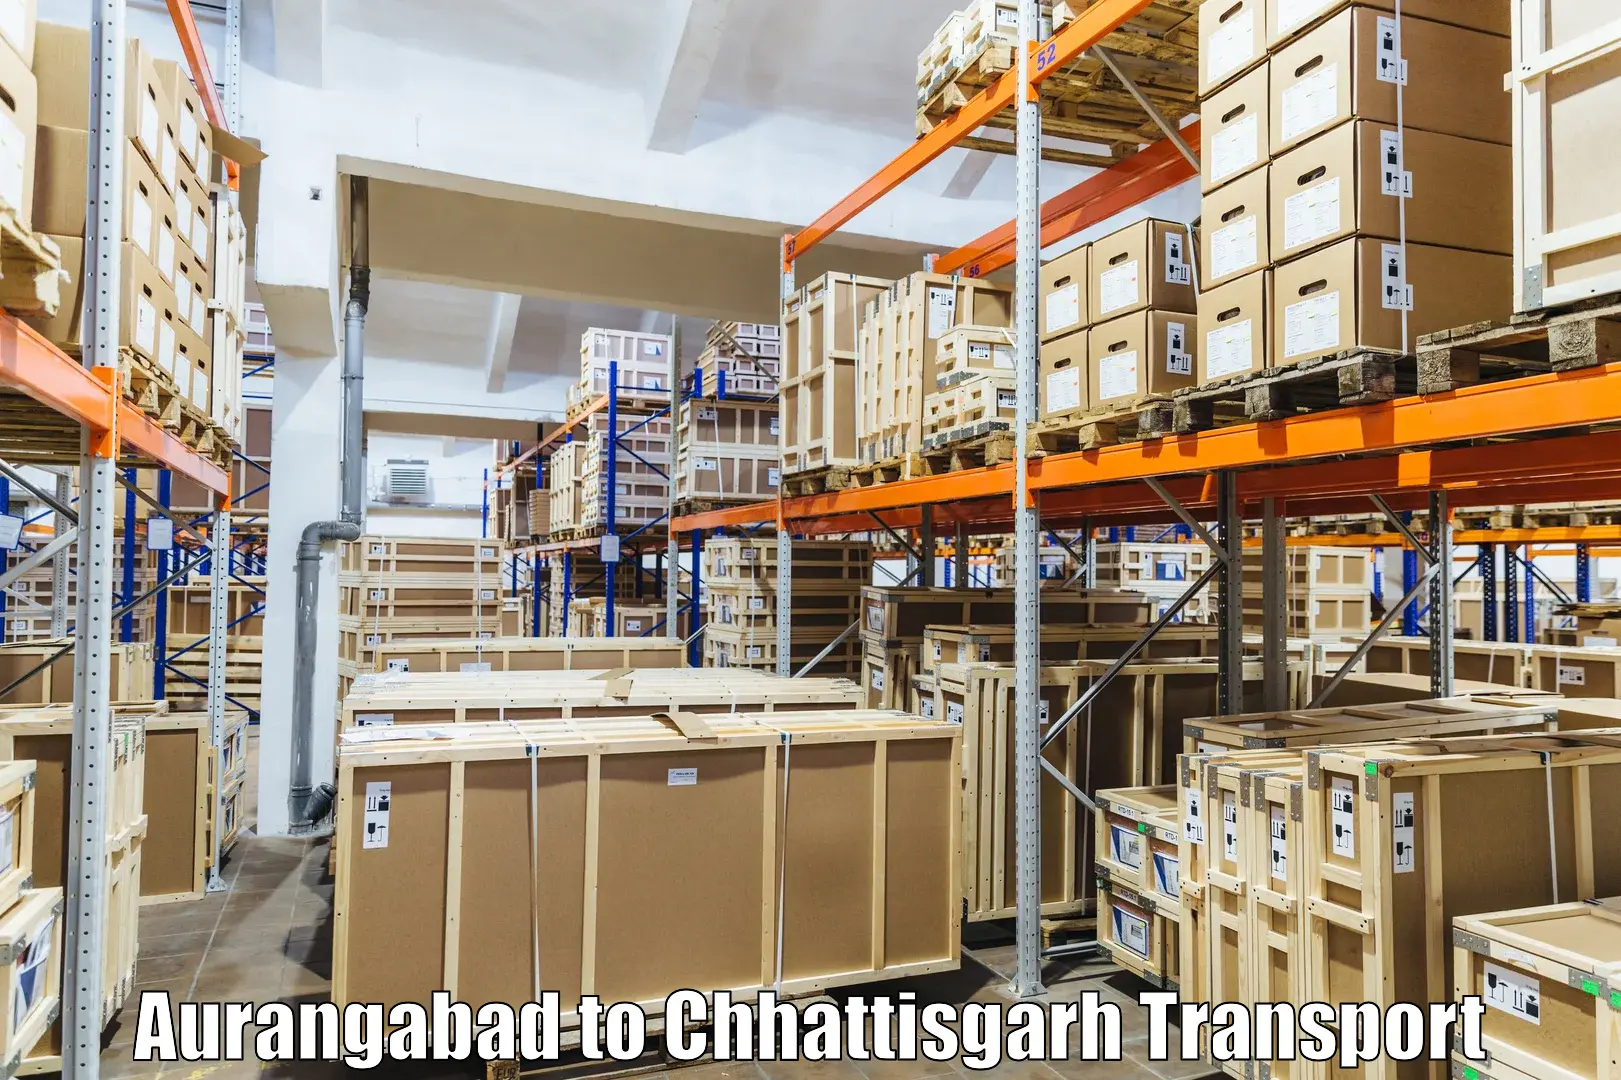 Container transport service Aurangabad to Chirimiri